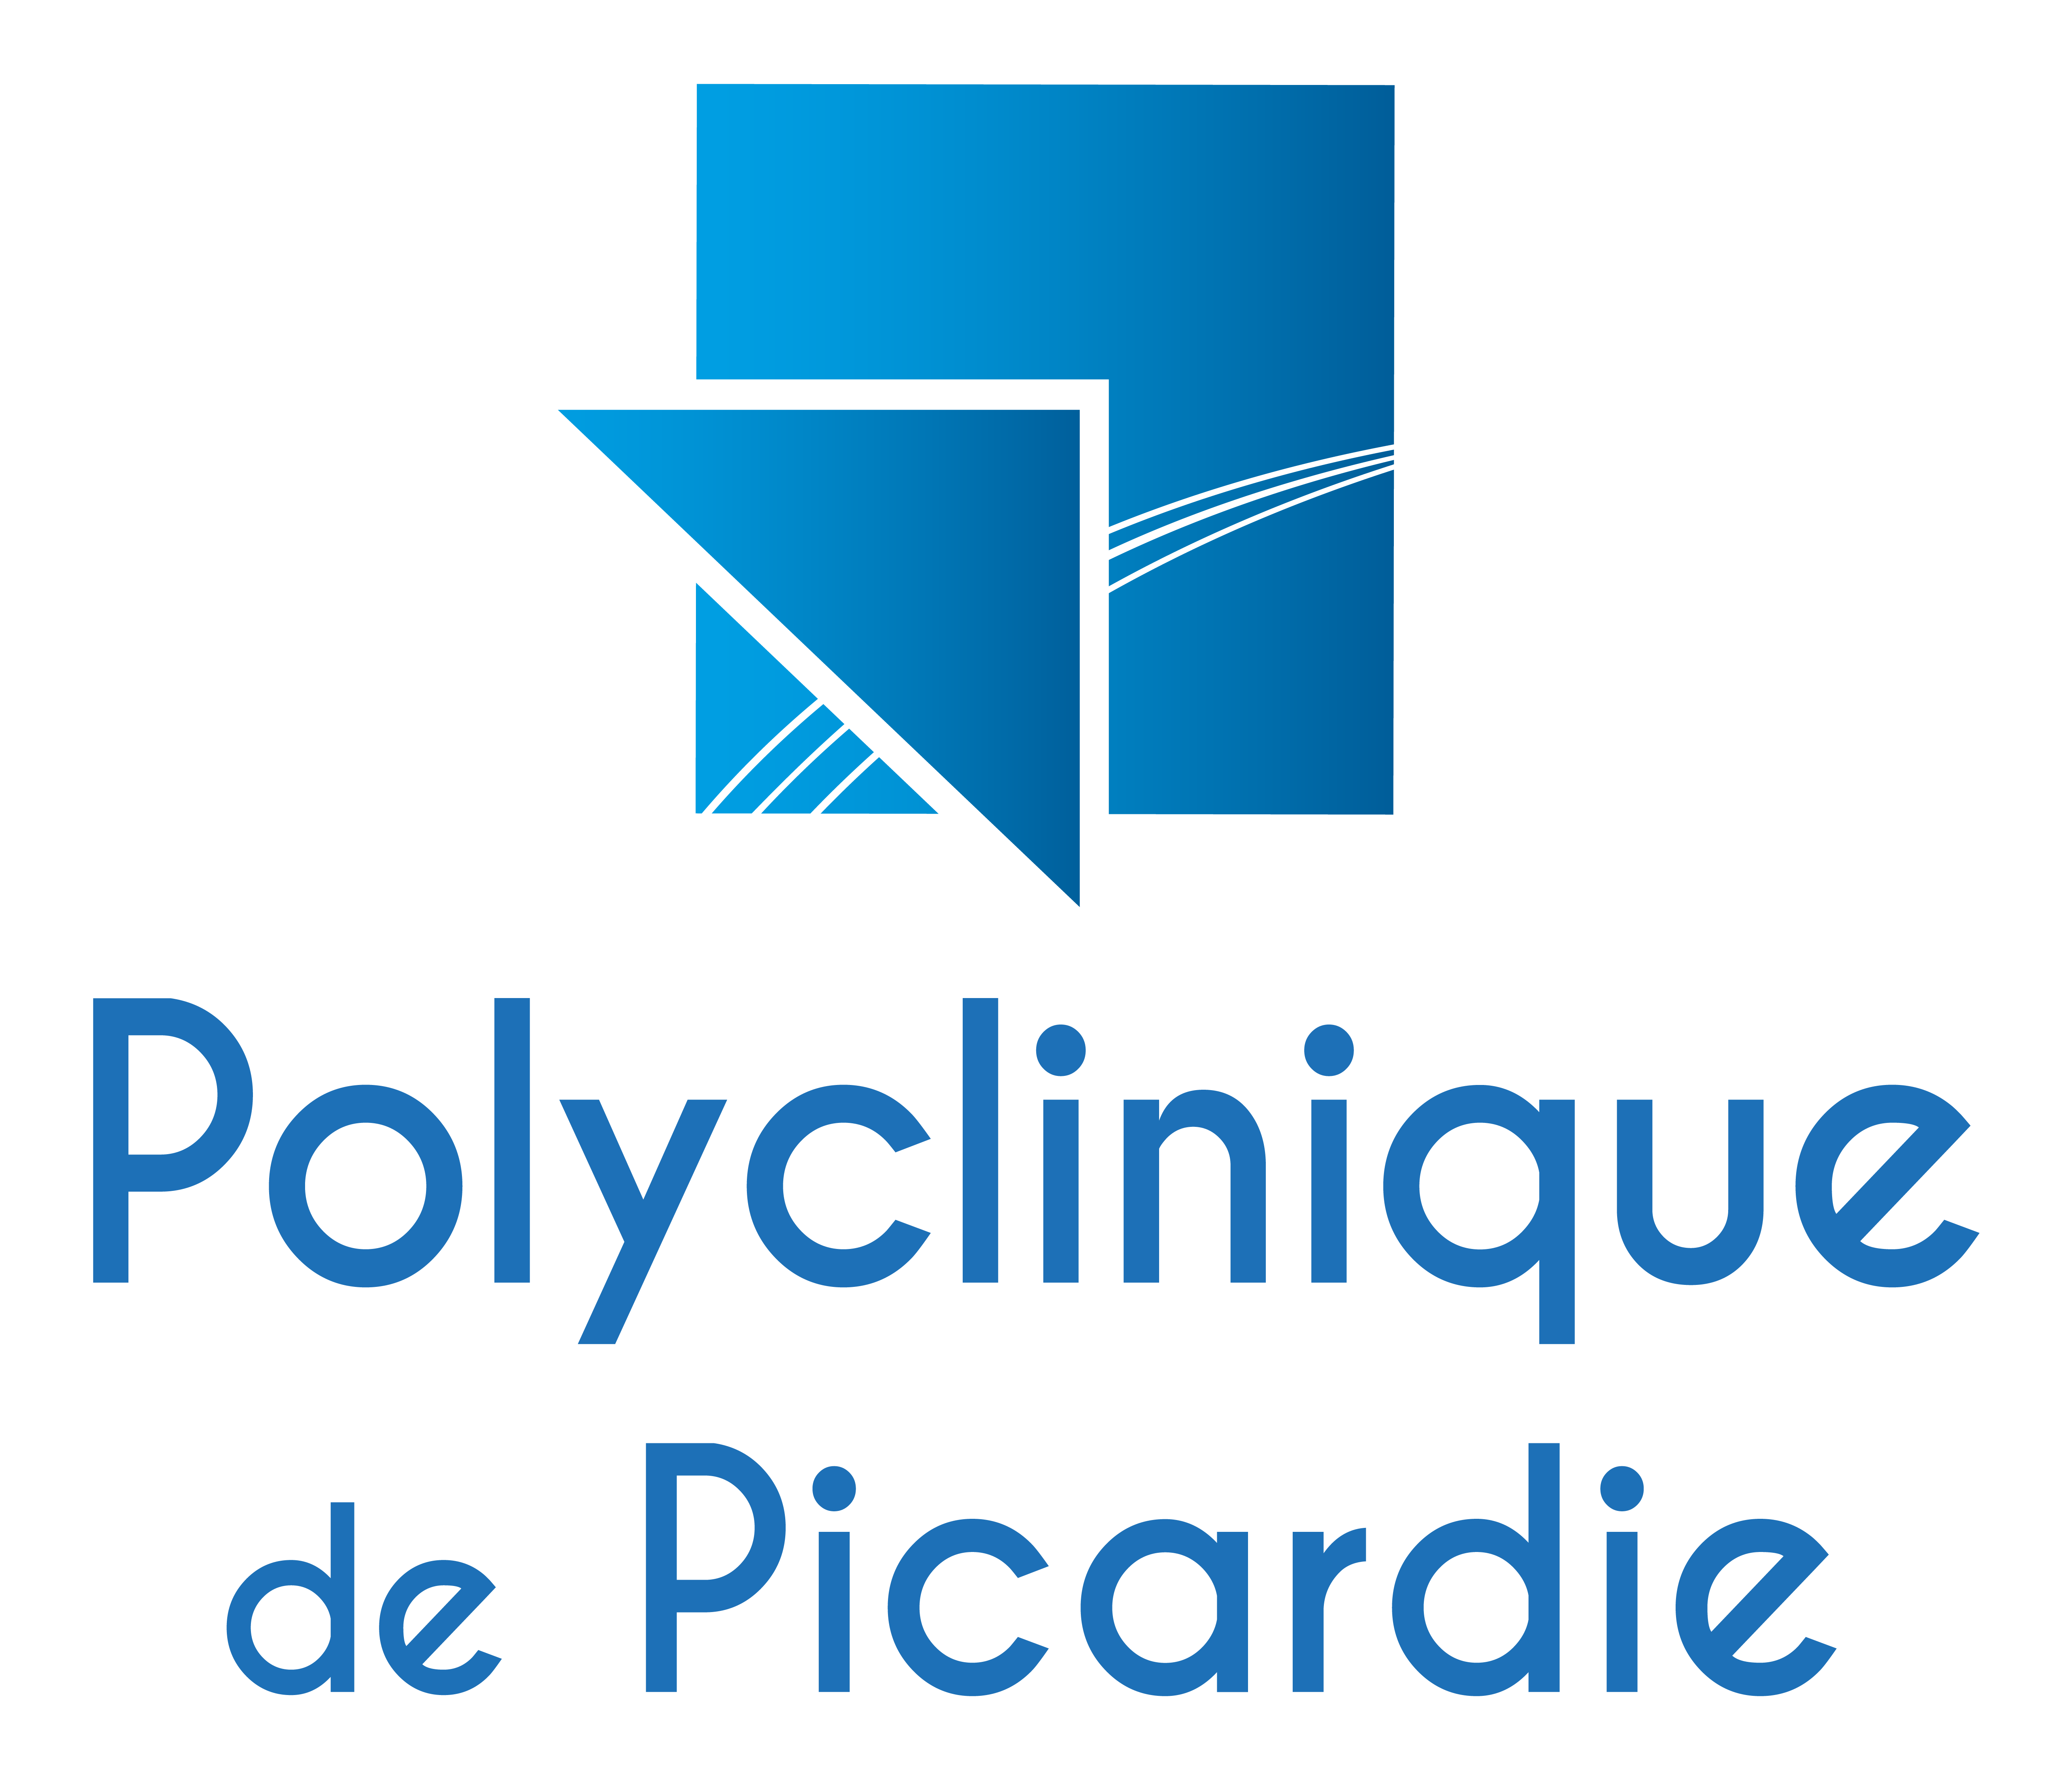 Polyclinique de Picardie | Adopt1Alternant - Offres d'emploi en stage et alternance